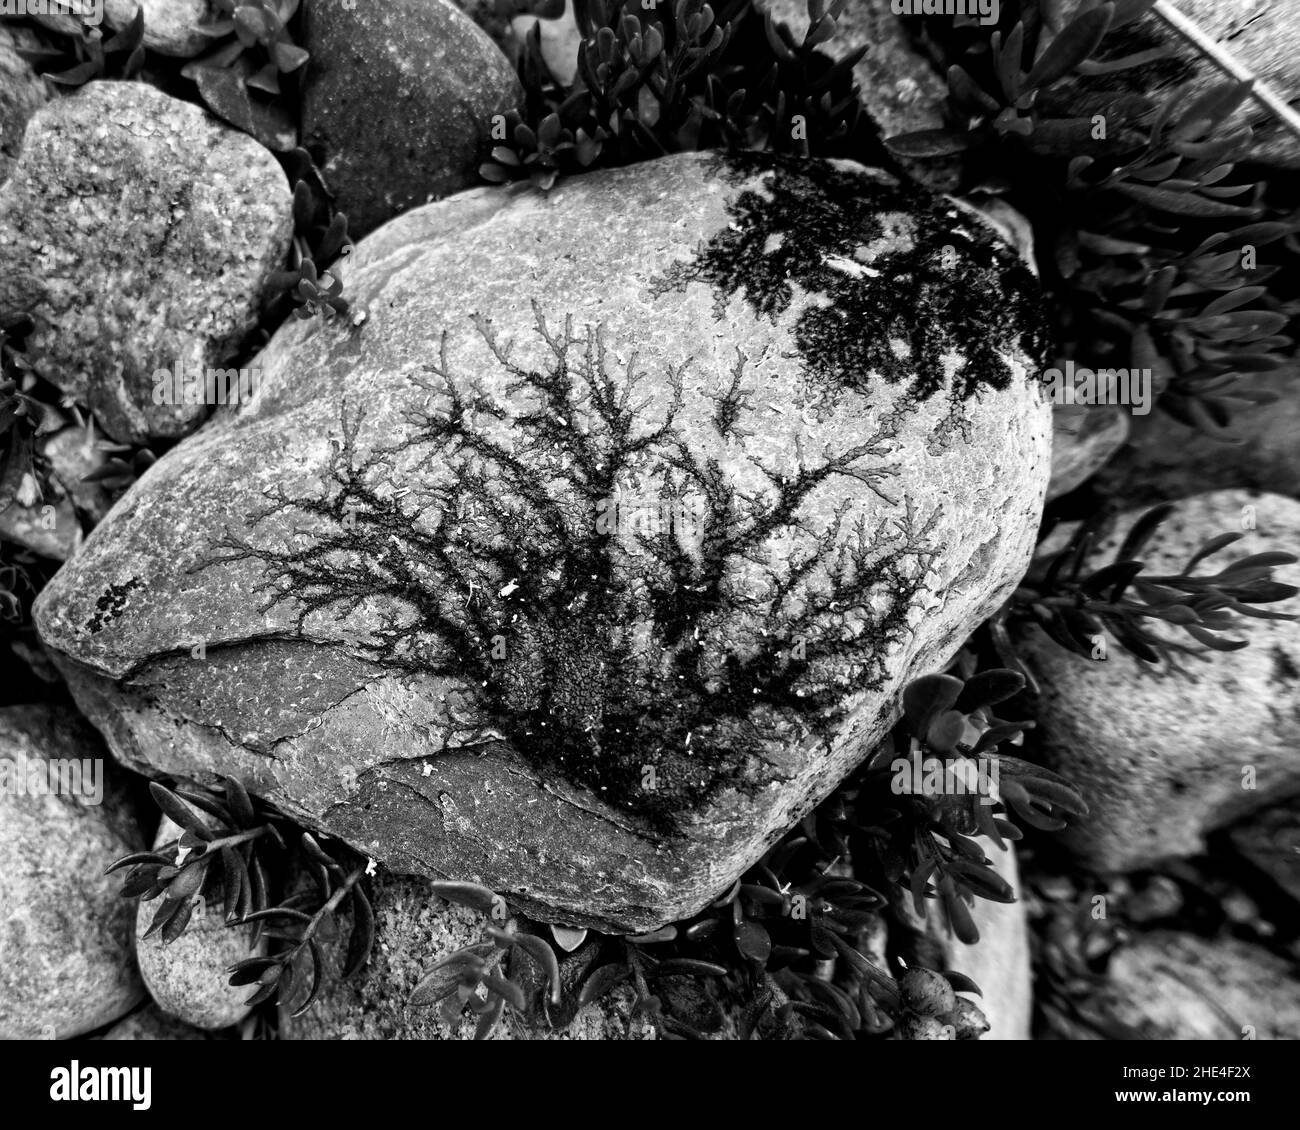 Opere d'arte naturali, realizzate da licheni su una roccia, che assomiglia a dendriti o bonsai. Foto Stock